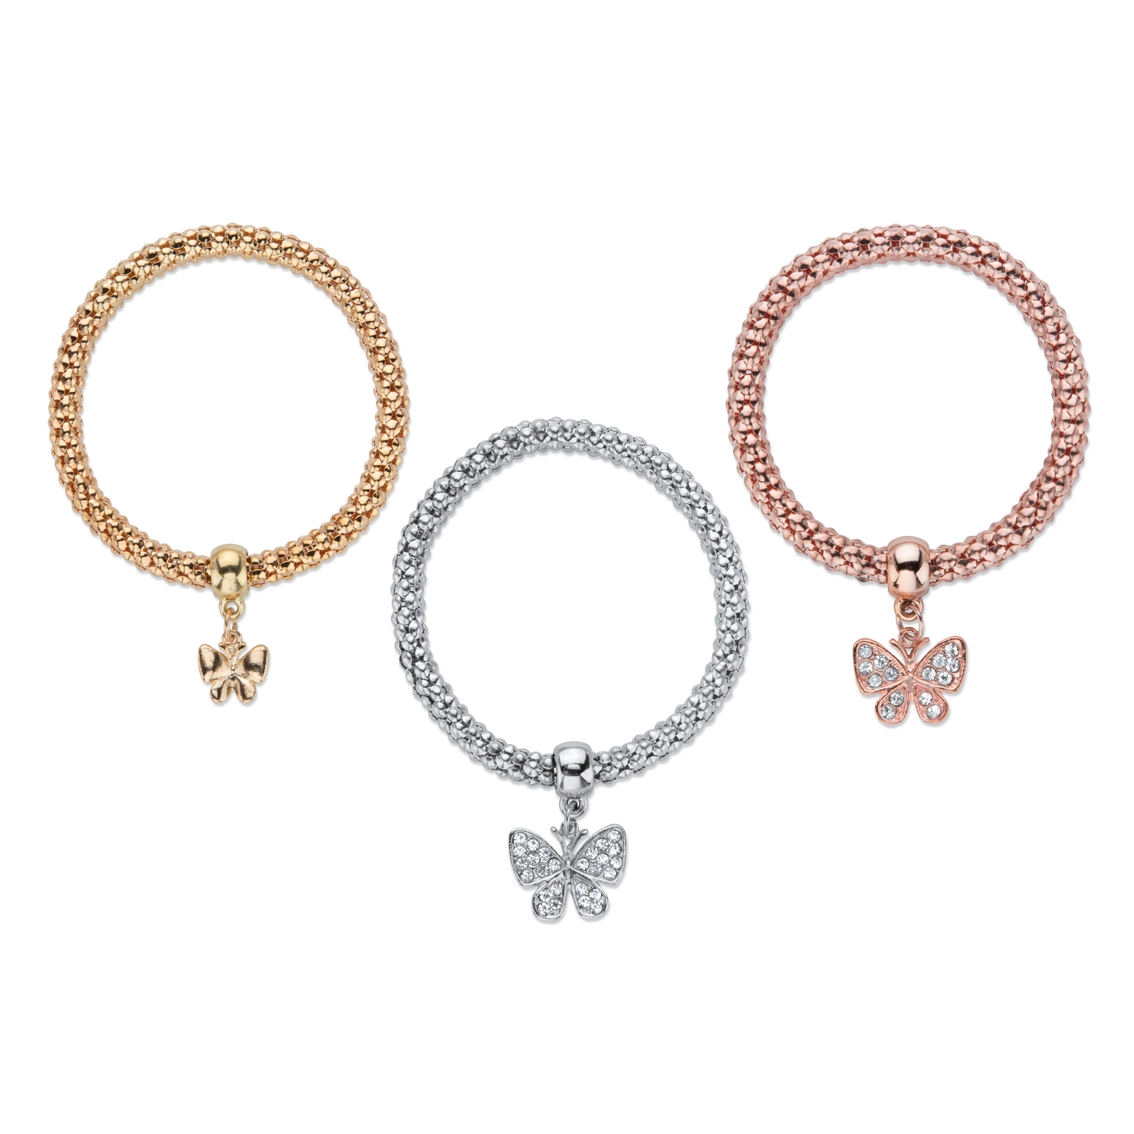 PalmBeach Crystal Butterfly Rosetone Goldtone and Silvertone Stretch Bracelet Set - Image 2 of 4